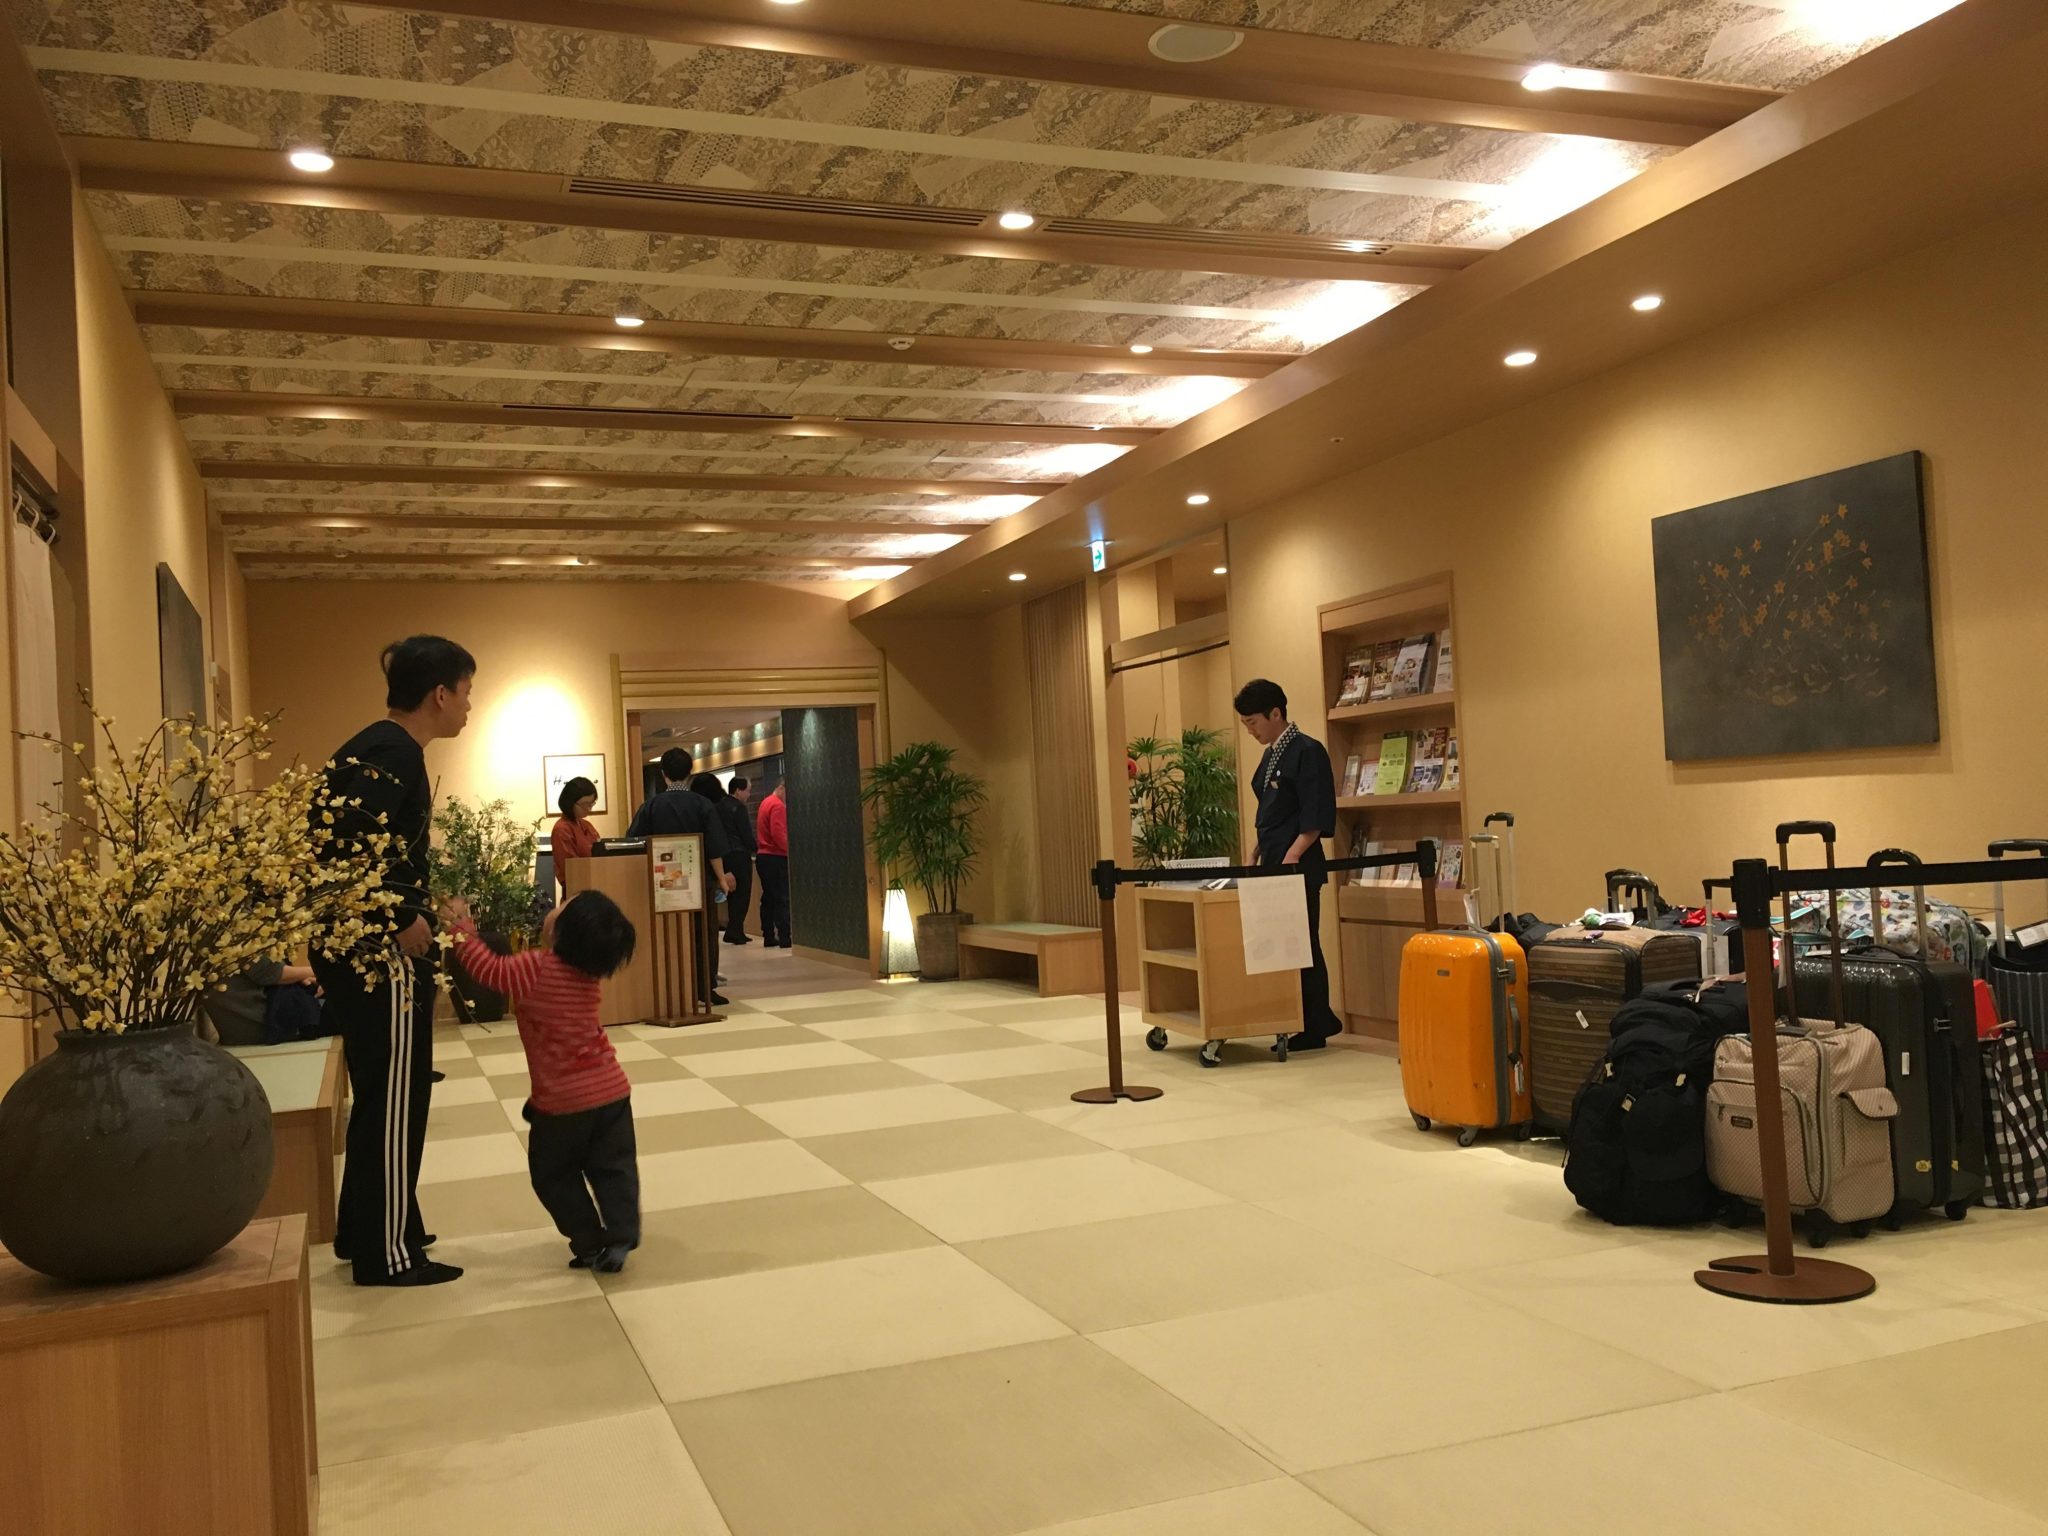 Onyado Nono Namba 호텔 1층